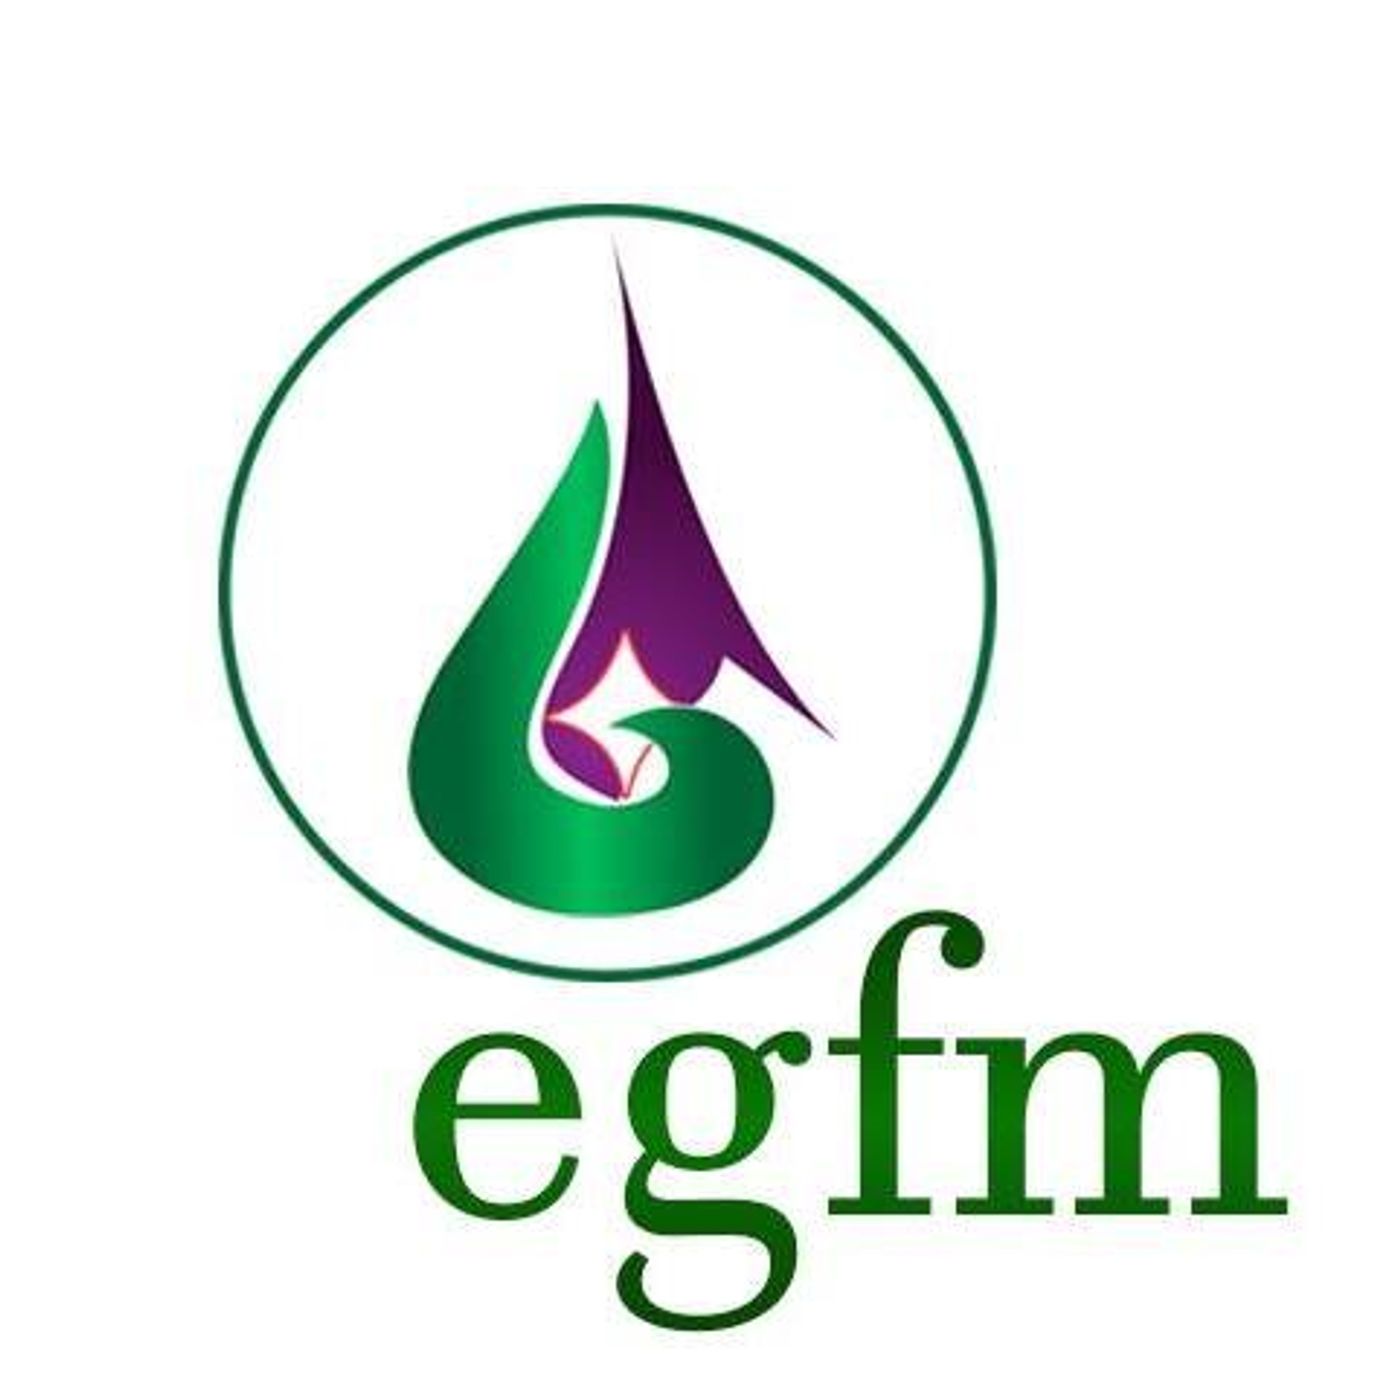 EGFM1